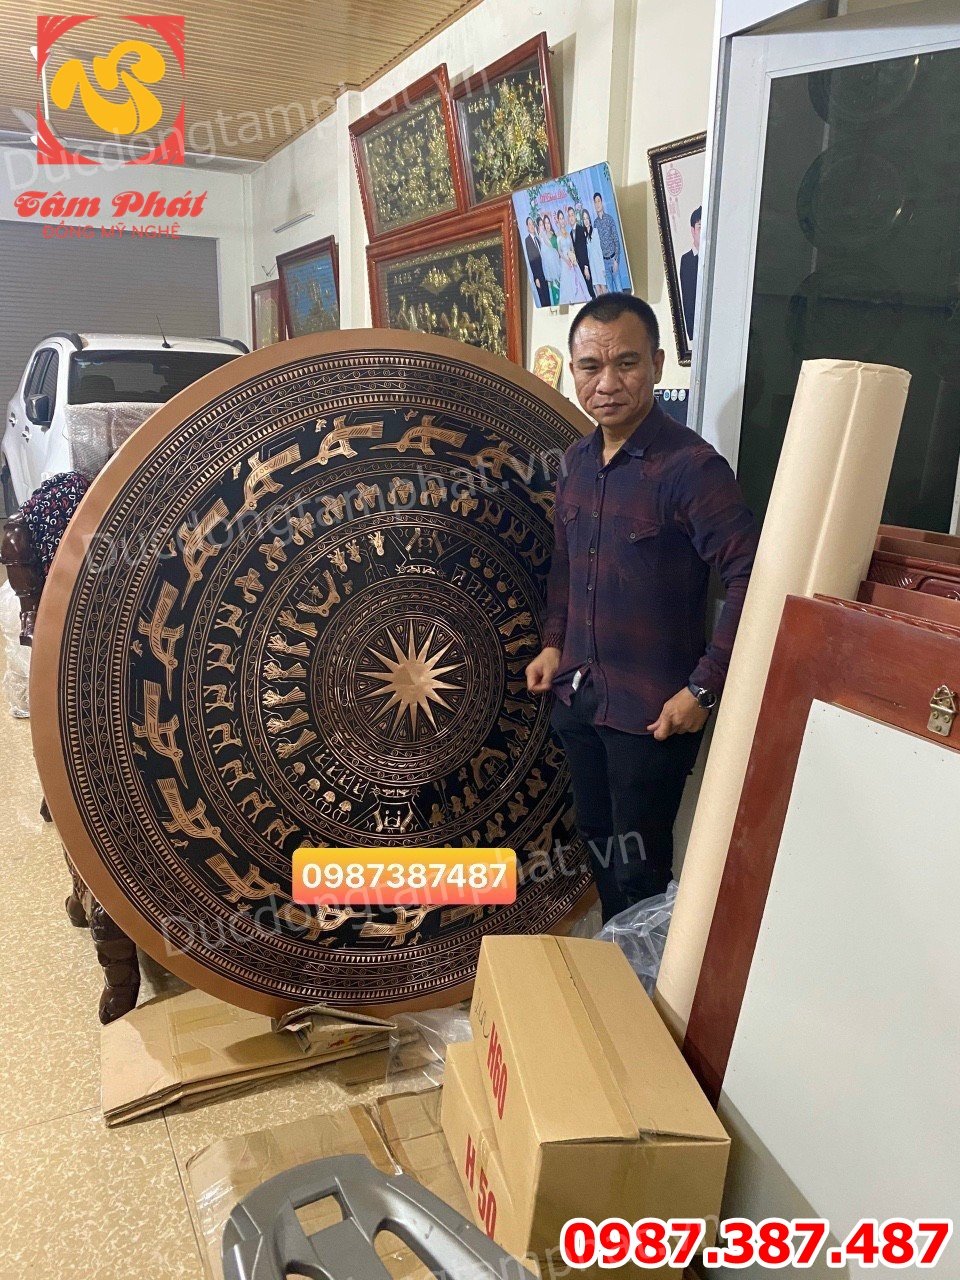 Mặt trống đồng đỏ đường kính 1m6 nặng 200kg bàn giao công an tỉnh Quảng Ninh